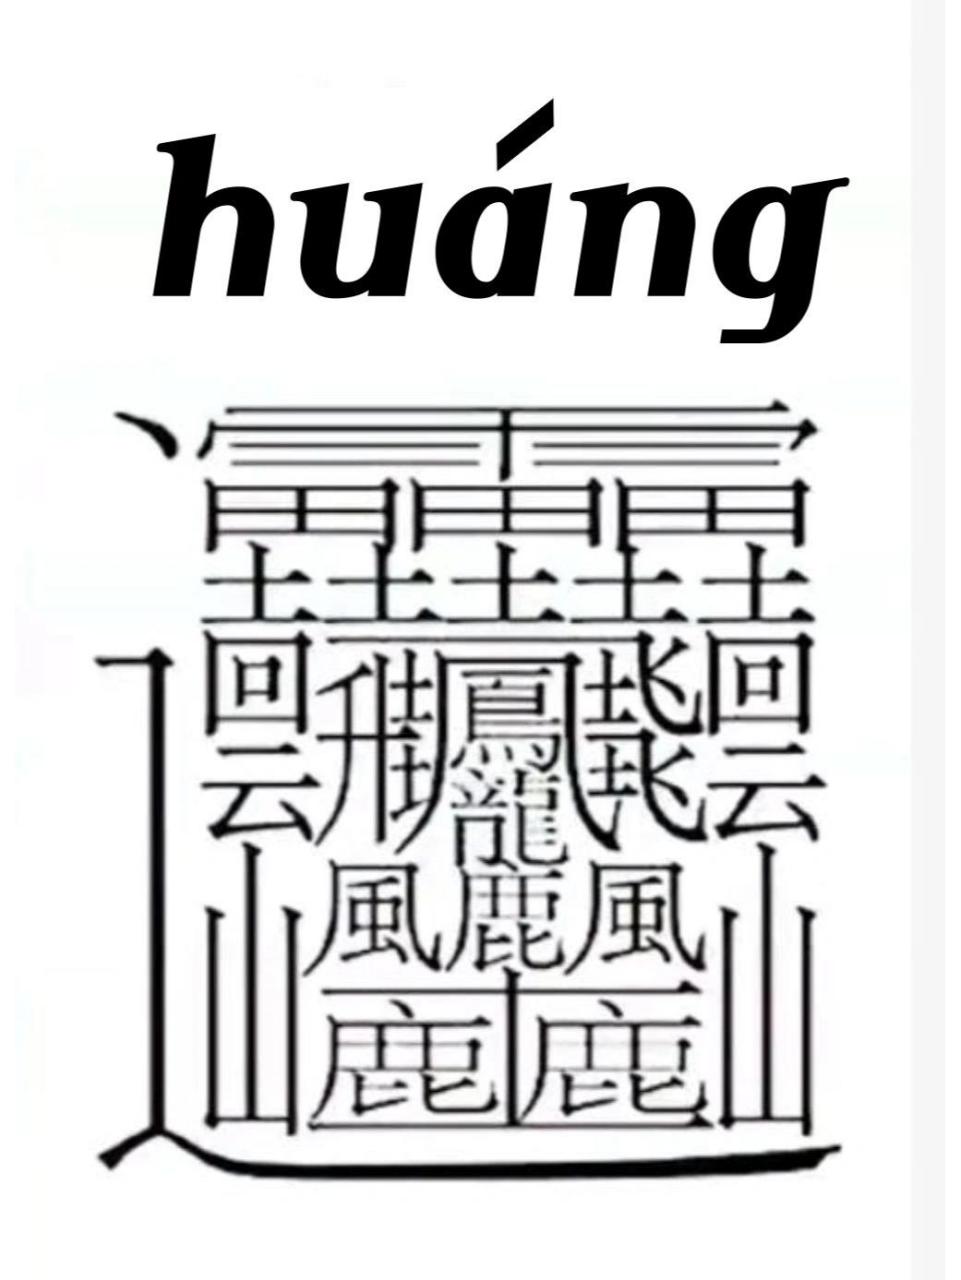 这个汉字笔画居然有172画… 本来以为biang字很难写的了,没想到还有